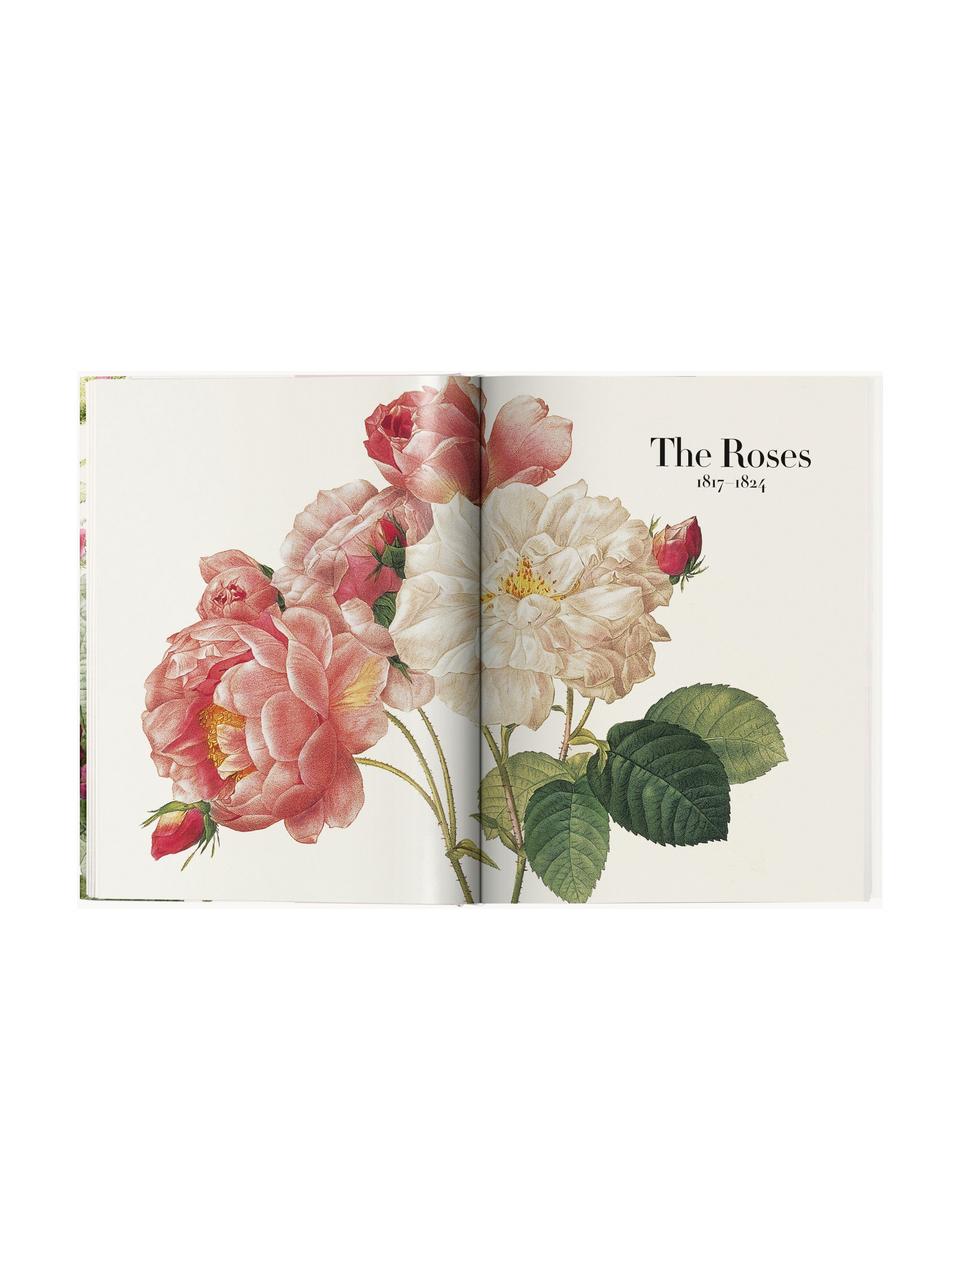 Obrázková kniha Book of Flowers, Papír, pevná vazba, Book of Flowers, Š 25 cm, V 35 cm